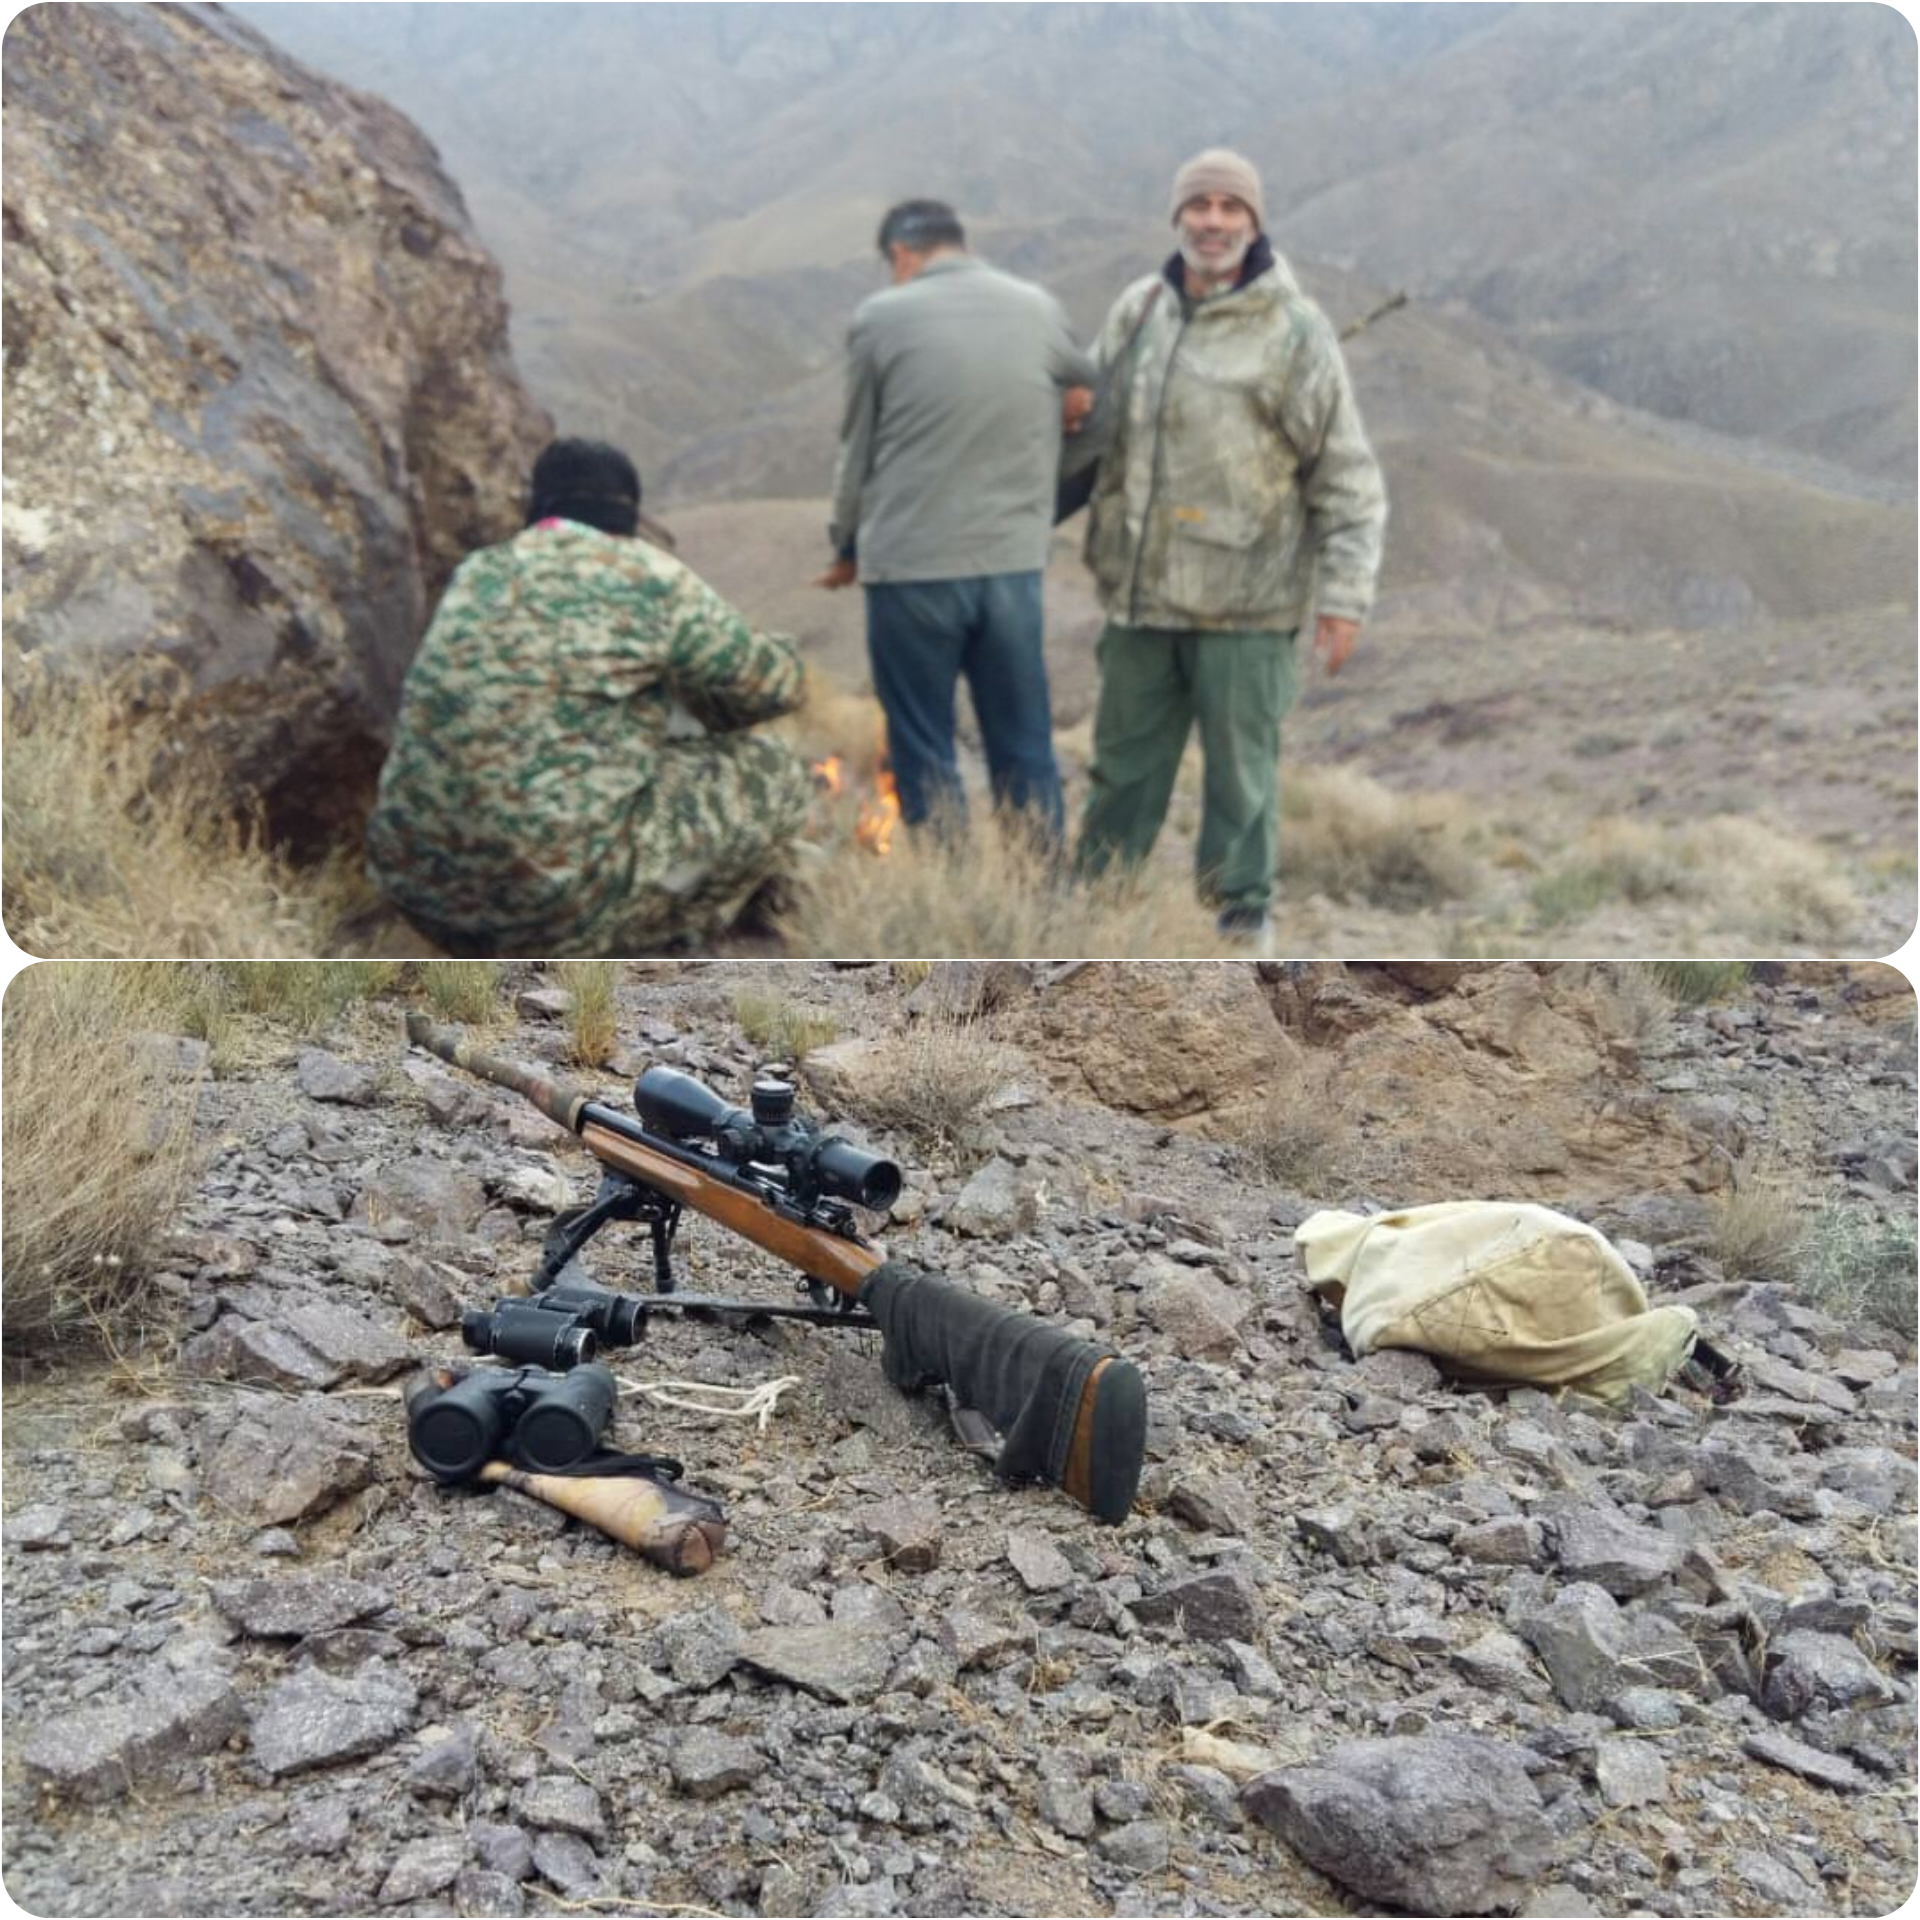 دستگیری دو شکارچی متخلف در منطقه حفاظت شده کهیاز